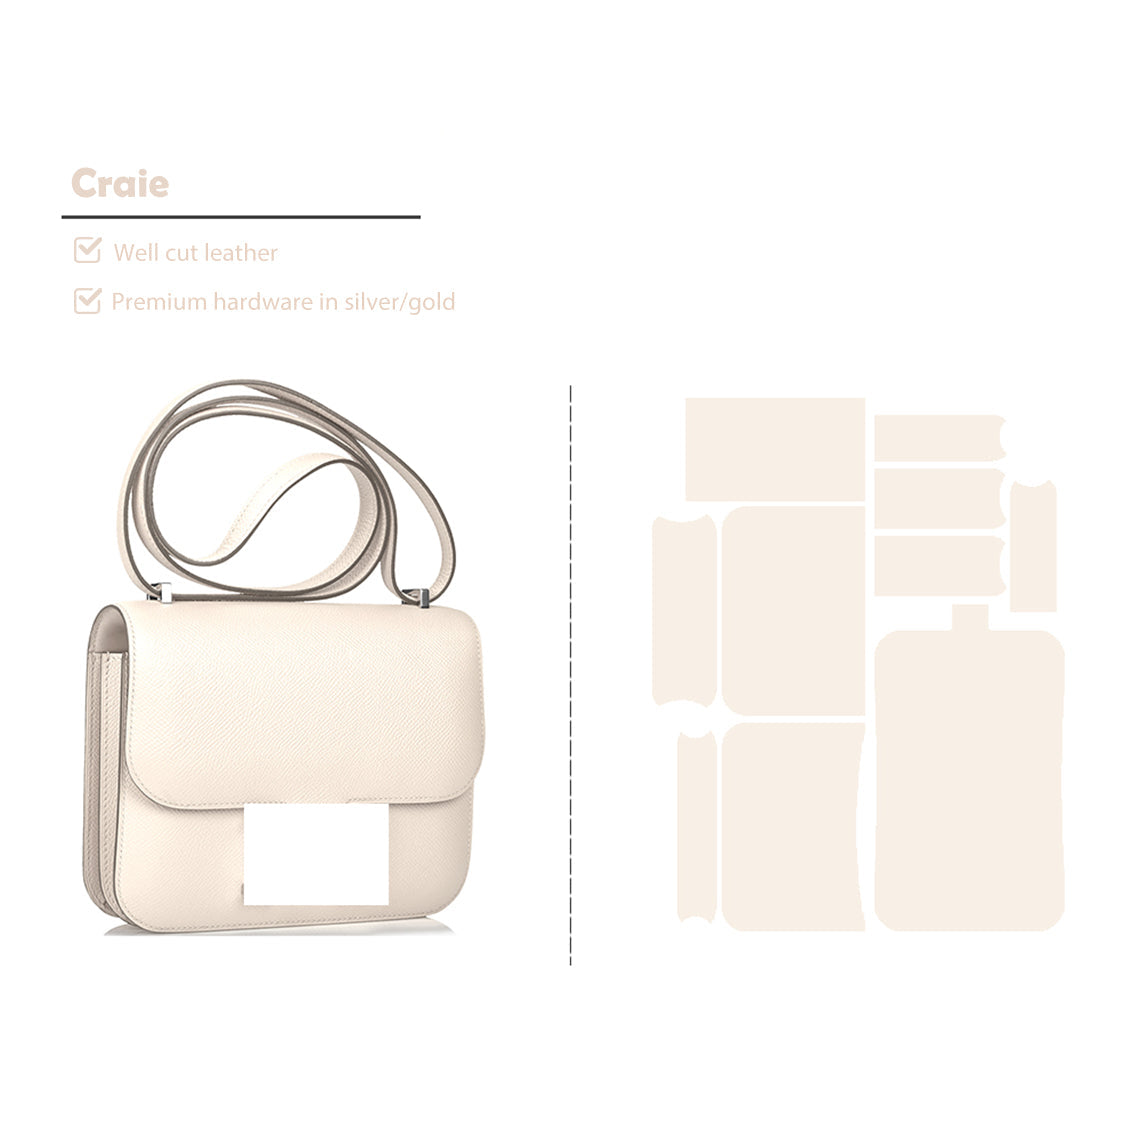 Full Grain Leather Inspired Kanstance Bag - Advanced DIY Kits